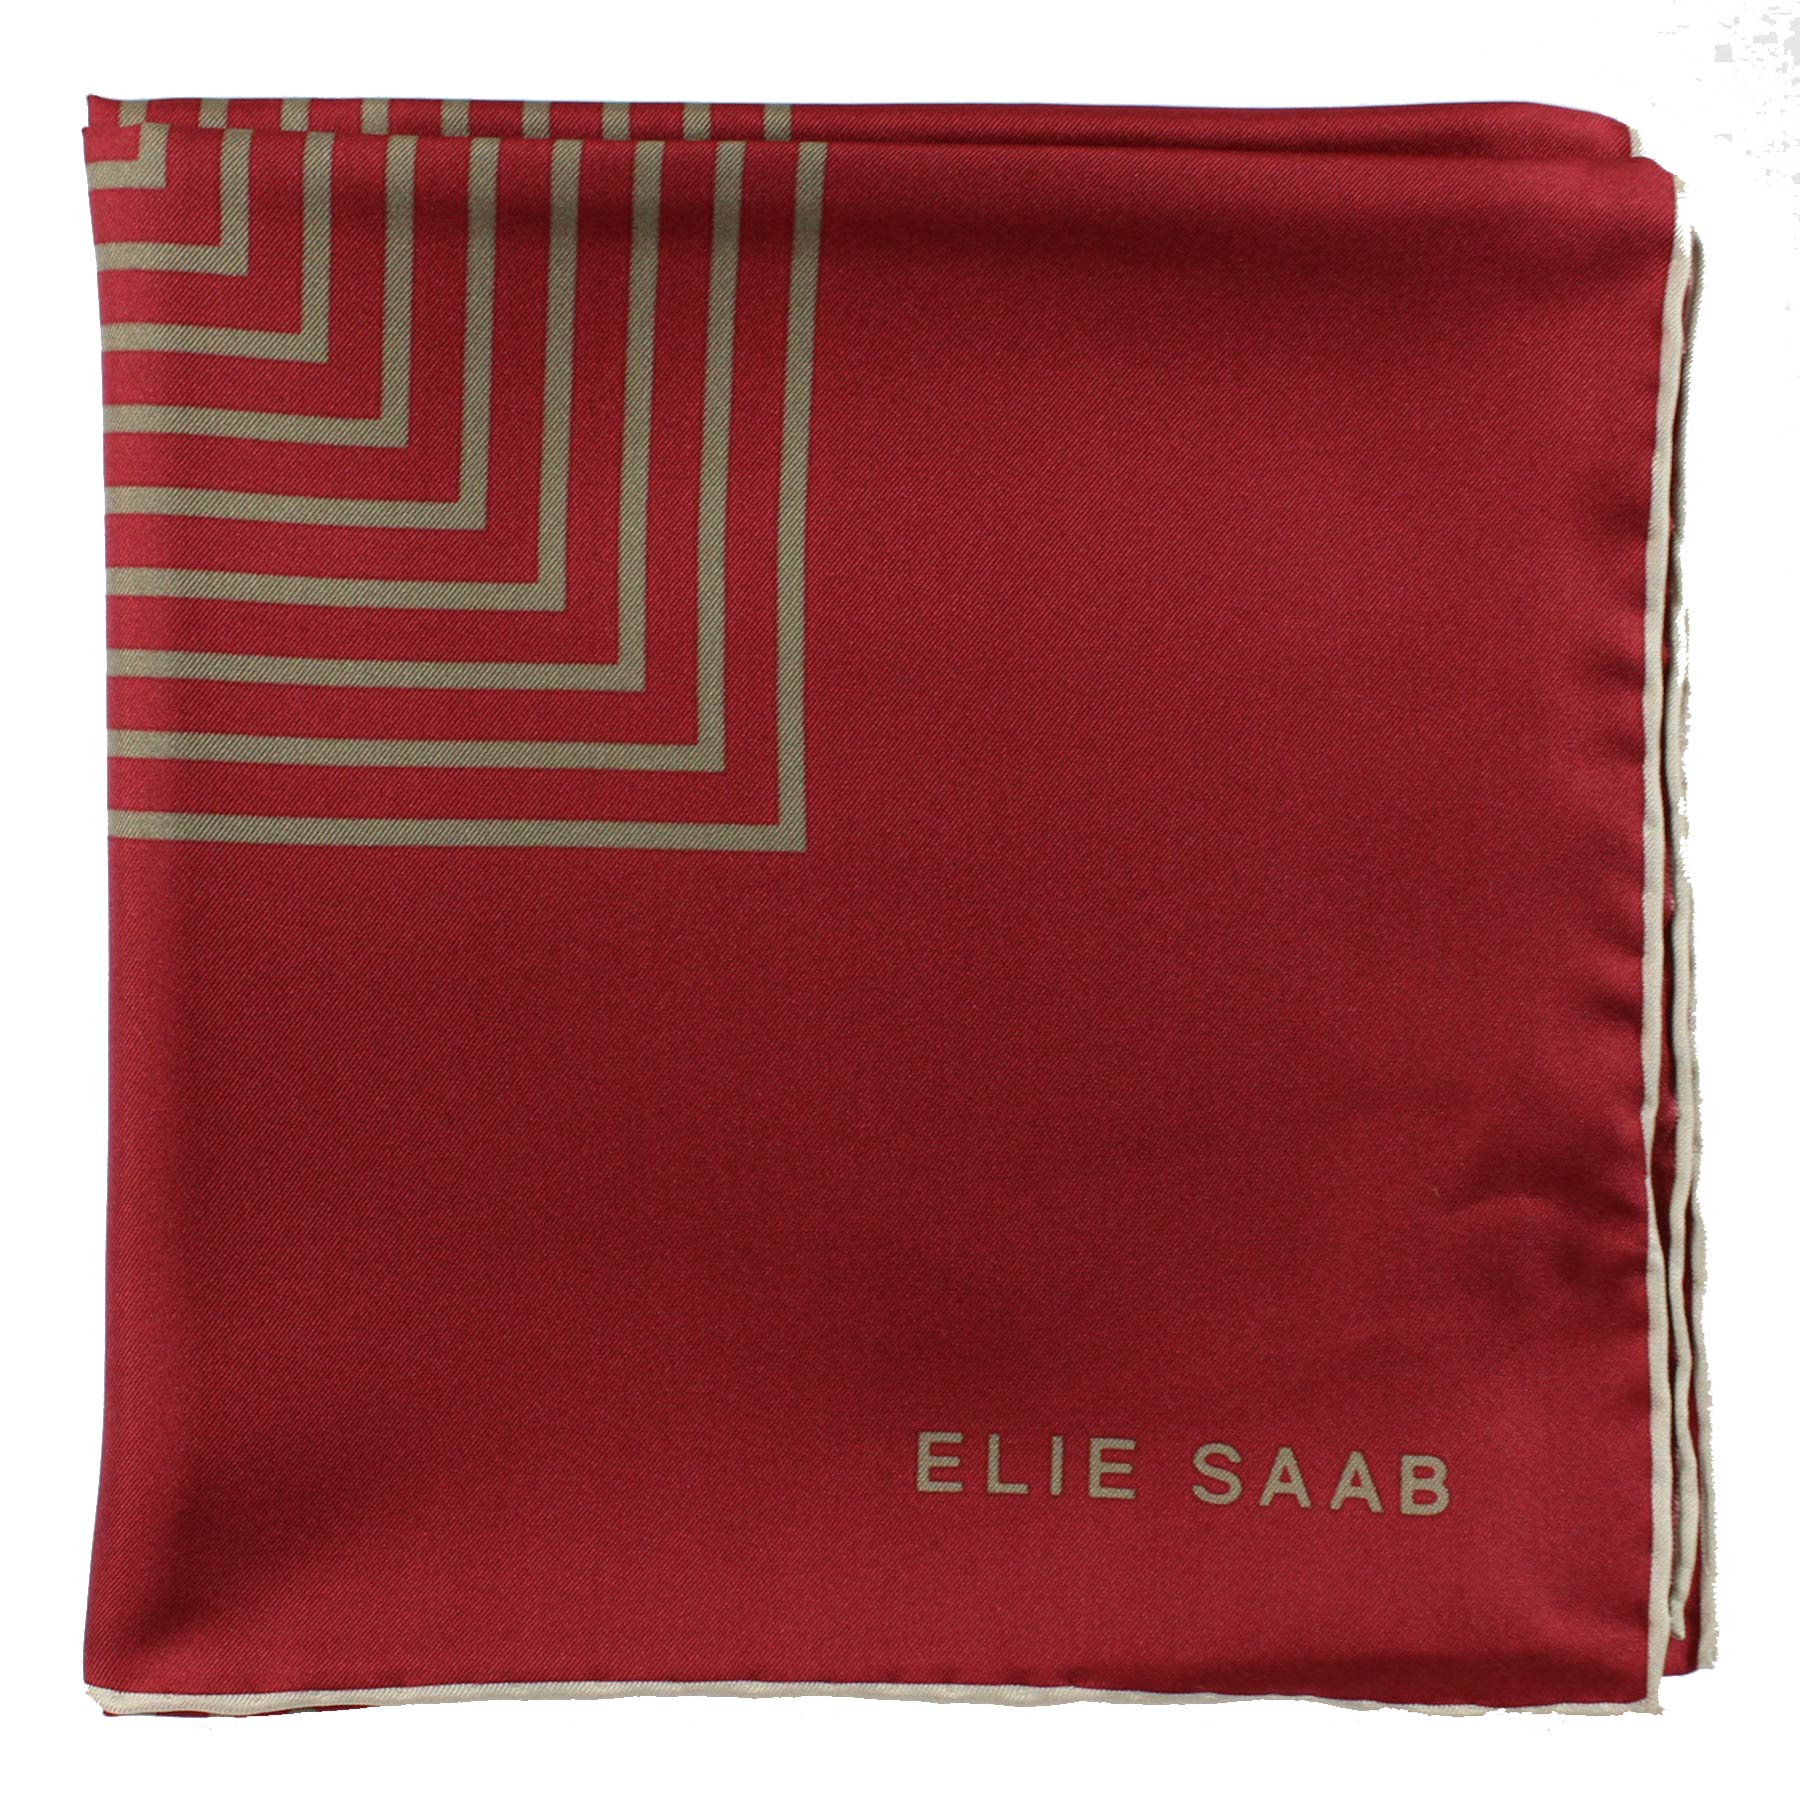 Elie Saab Scarf Maroon Gray Design - Twill Silk Foulard SALE